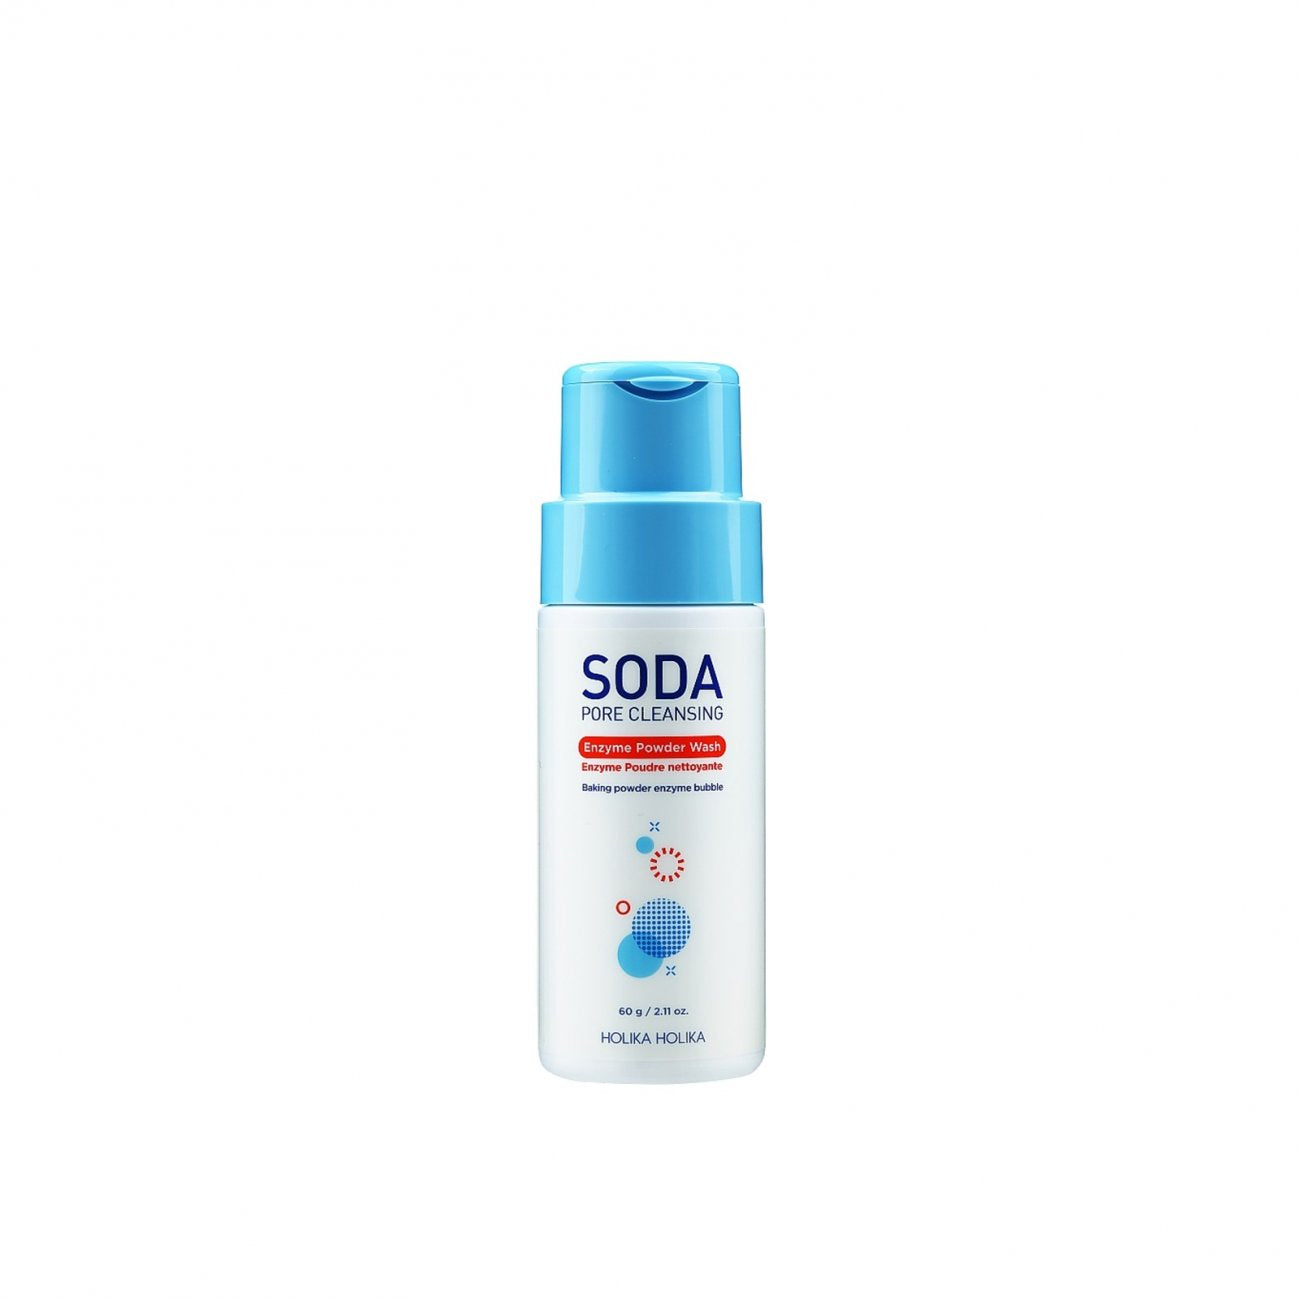 Soda Pore Cleansing Enzyme Powder Wash 60g